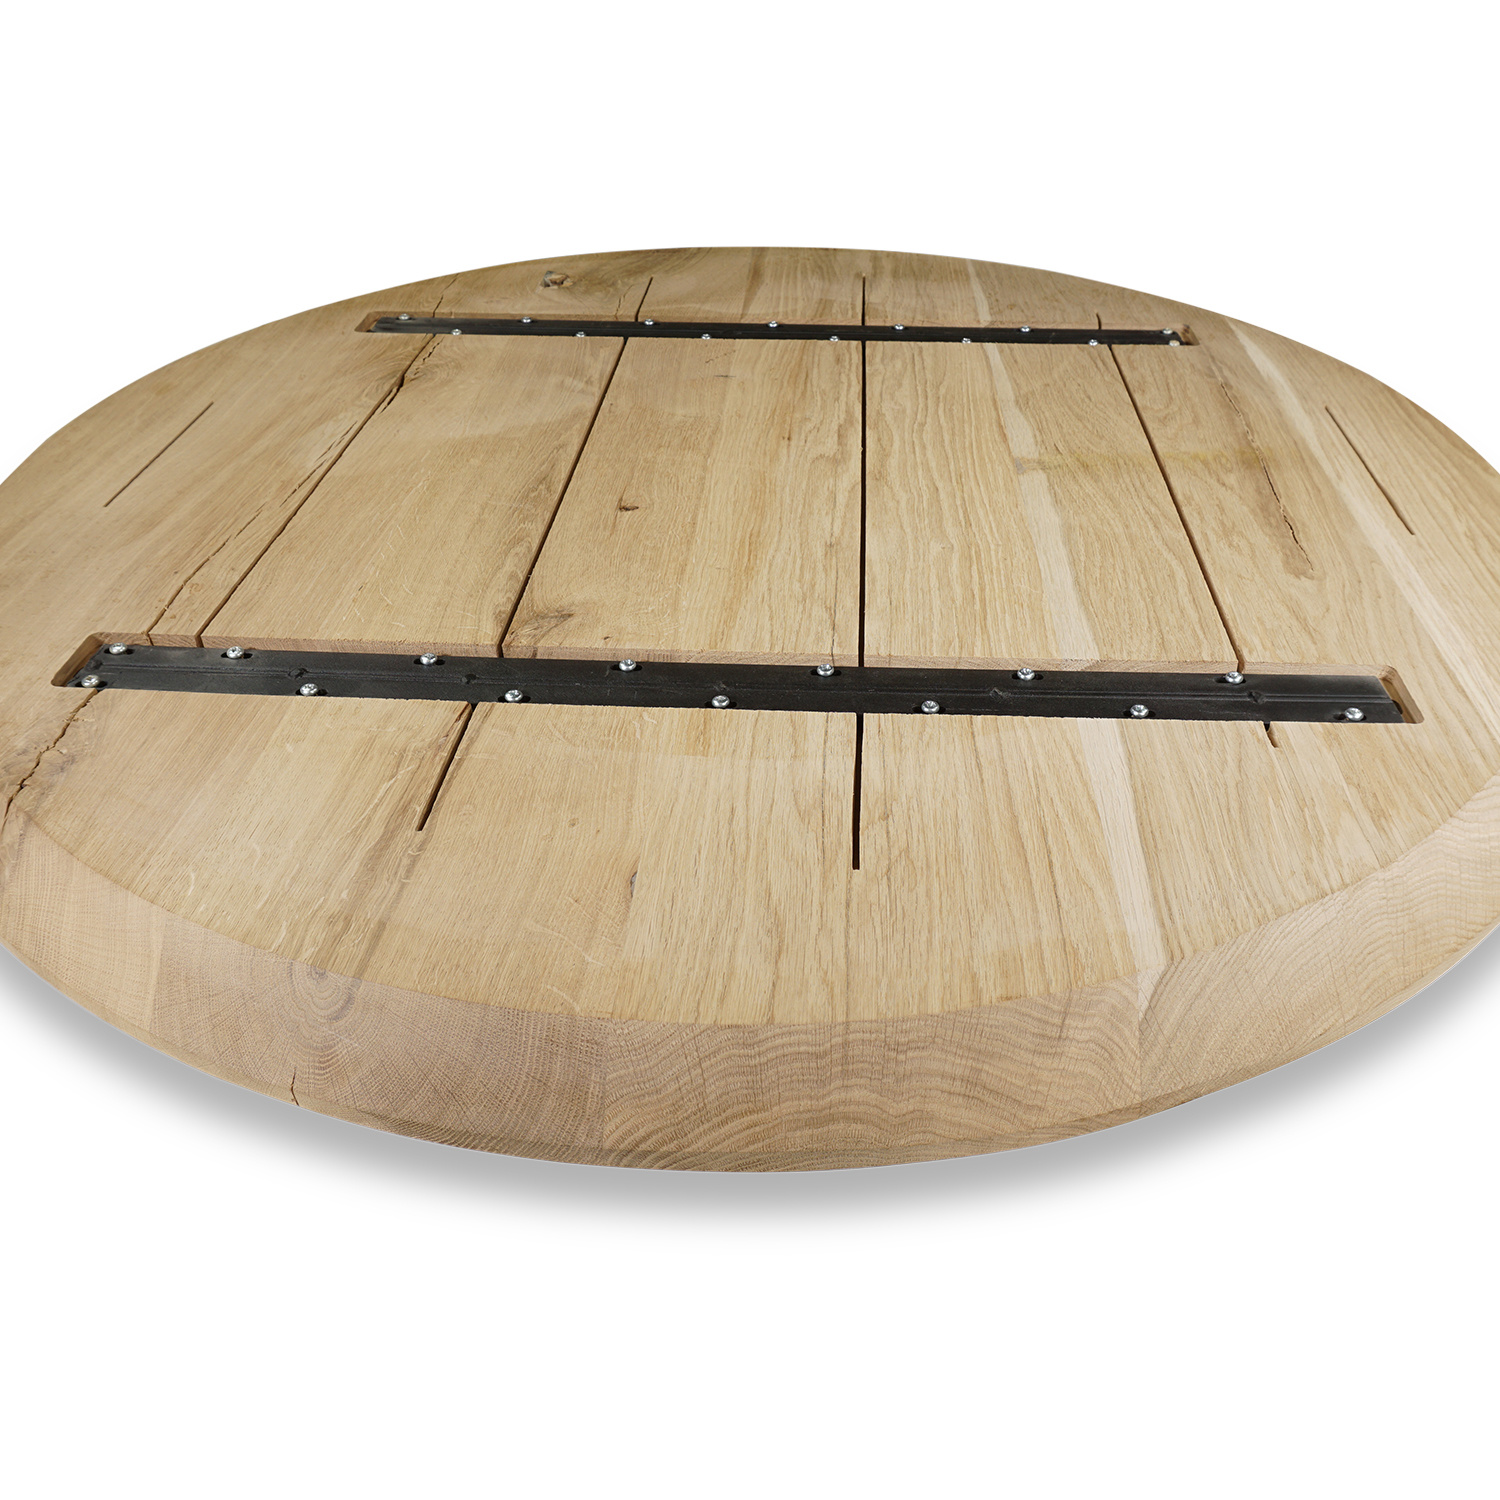  Tischplatte Wildeiche rund - 3 cm dick -  Eichenholz A-Qualität - Eiche Tischplatte rund massiv - Verleimt & künstlich getrocknet (HF 8-12%)